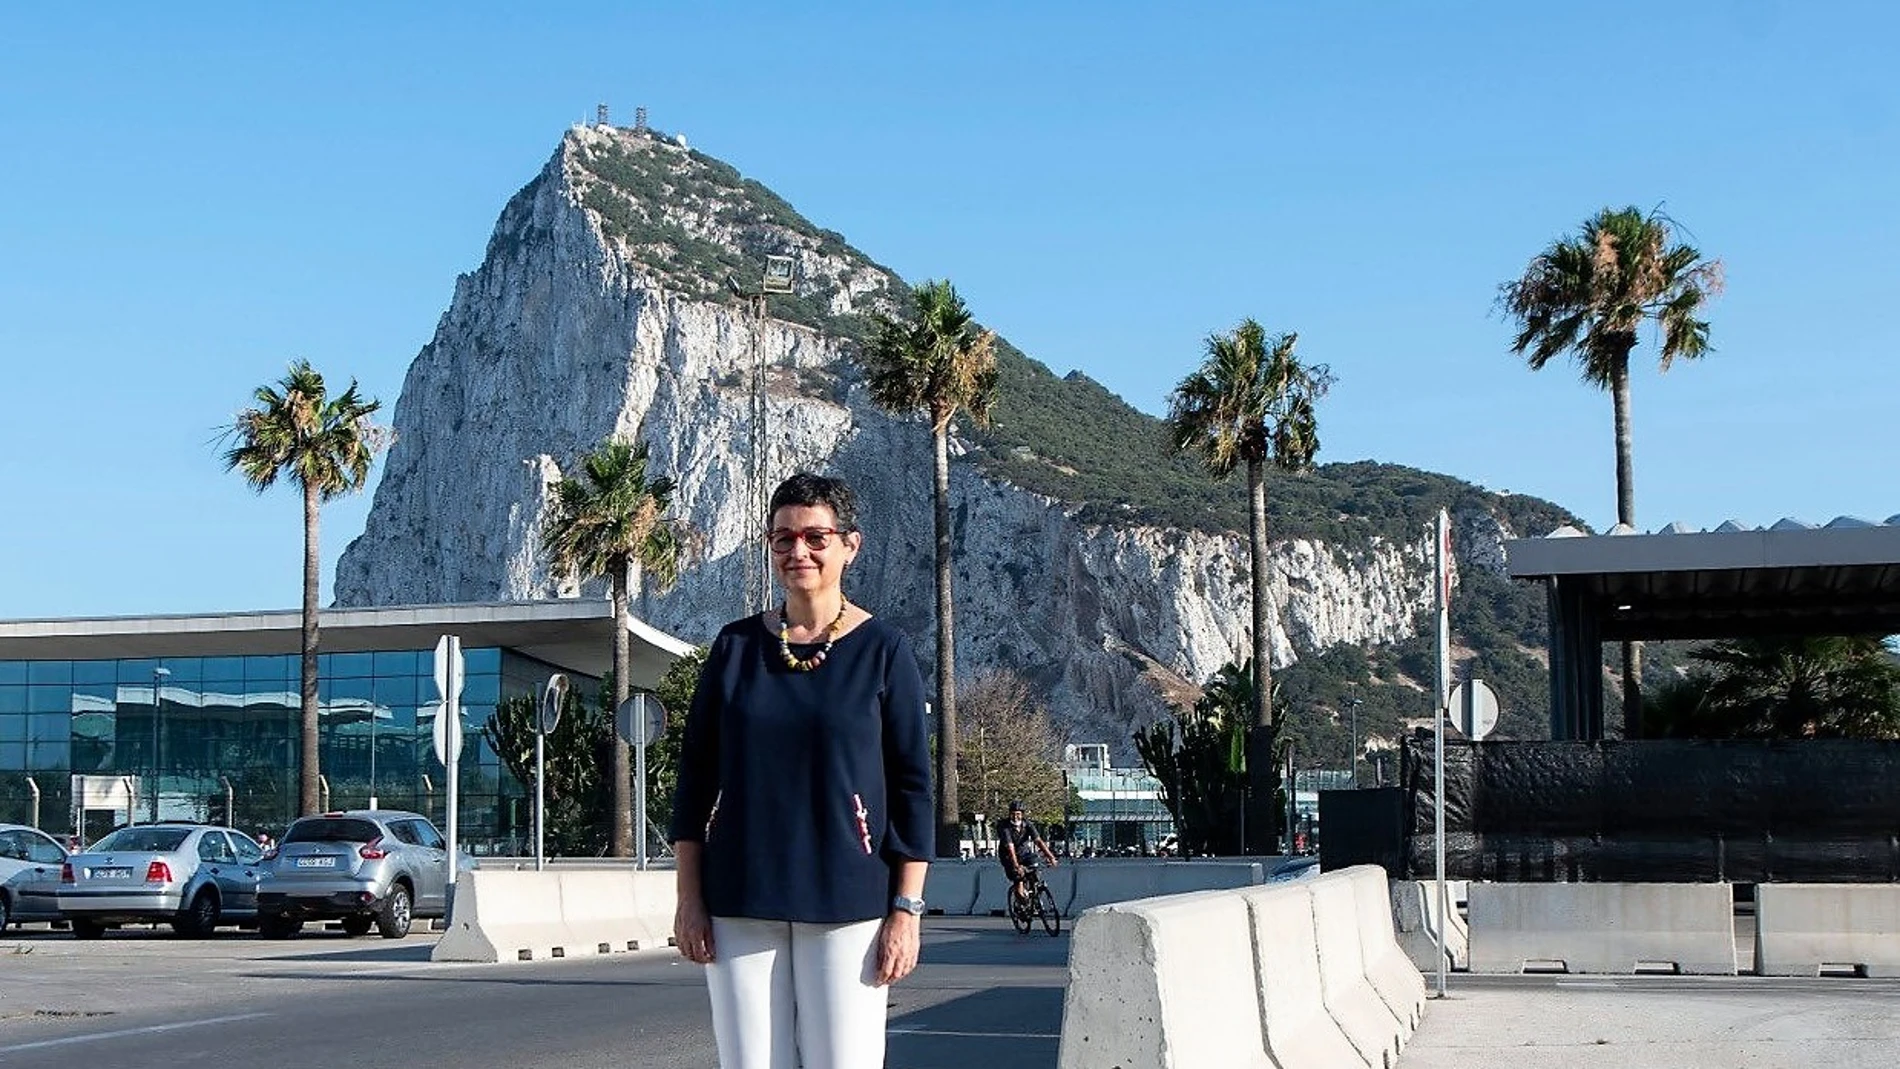 La ministra González Laya frente a GibraltarDELEGACIÓN DEL GOBIERNO23/07/2020